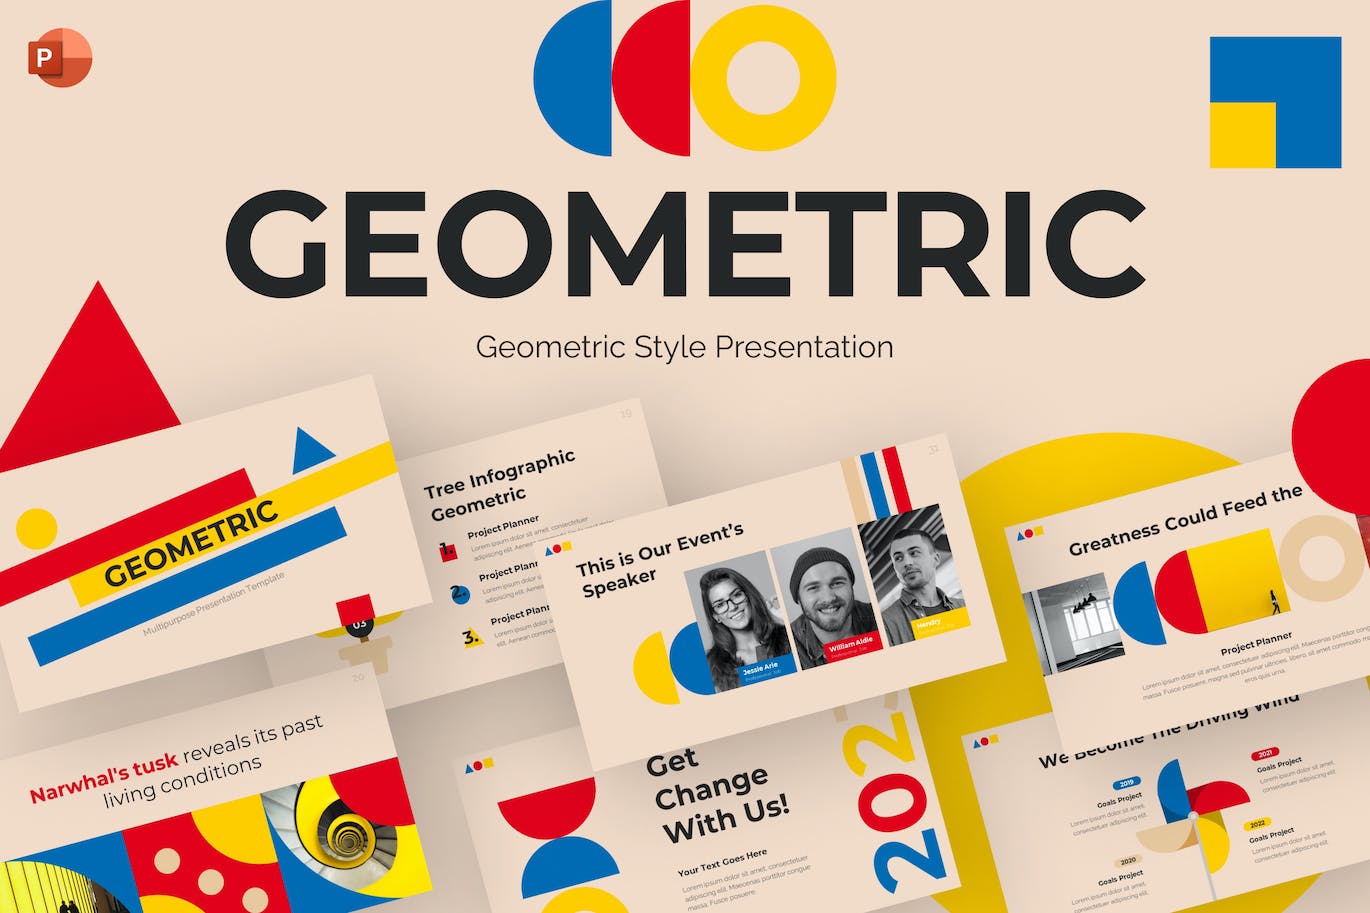 几何风格创意PPT幻灯片模板素材 Geometric Style Creative PowerPoint Template 幻灯图表 第1张